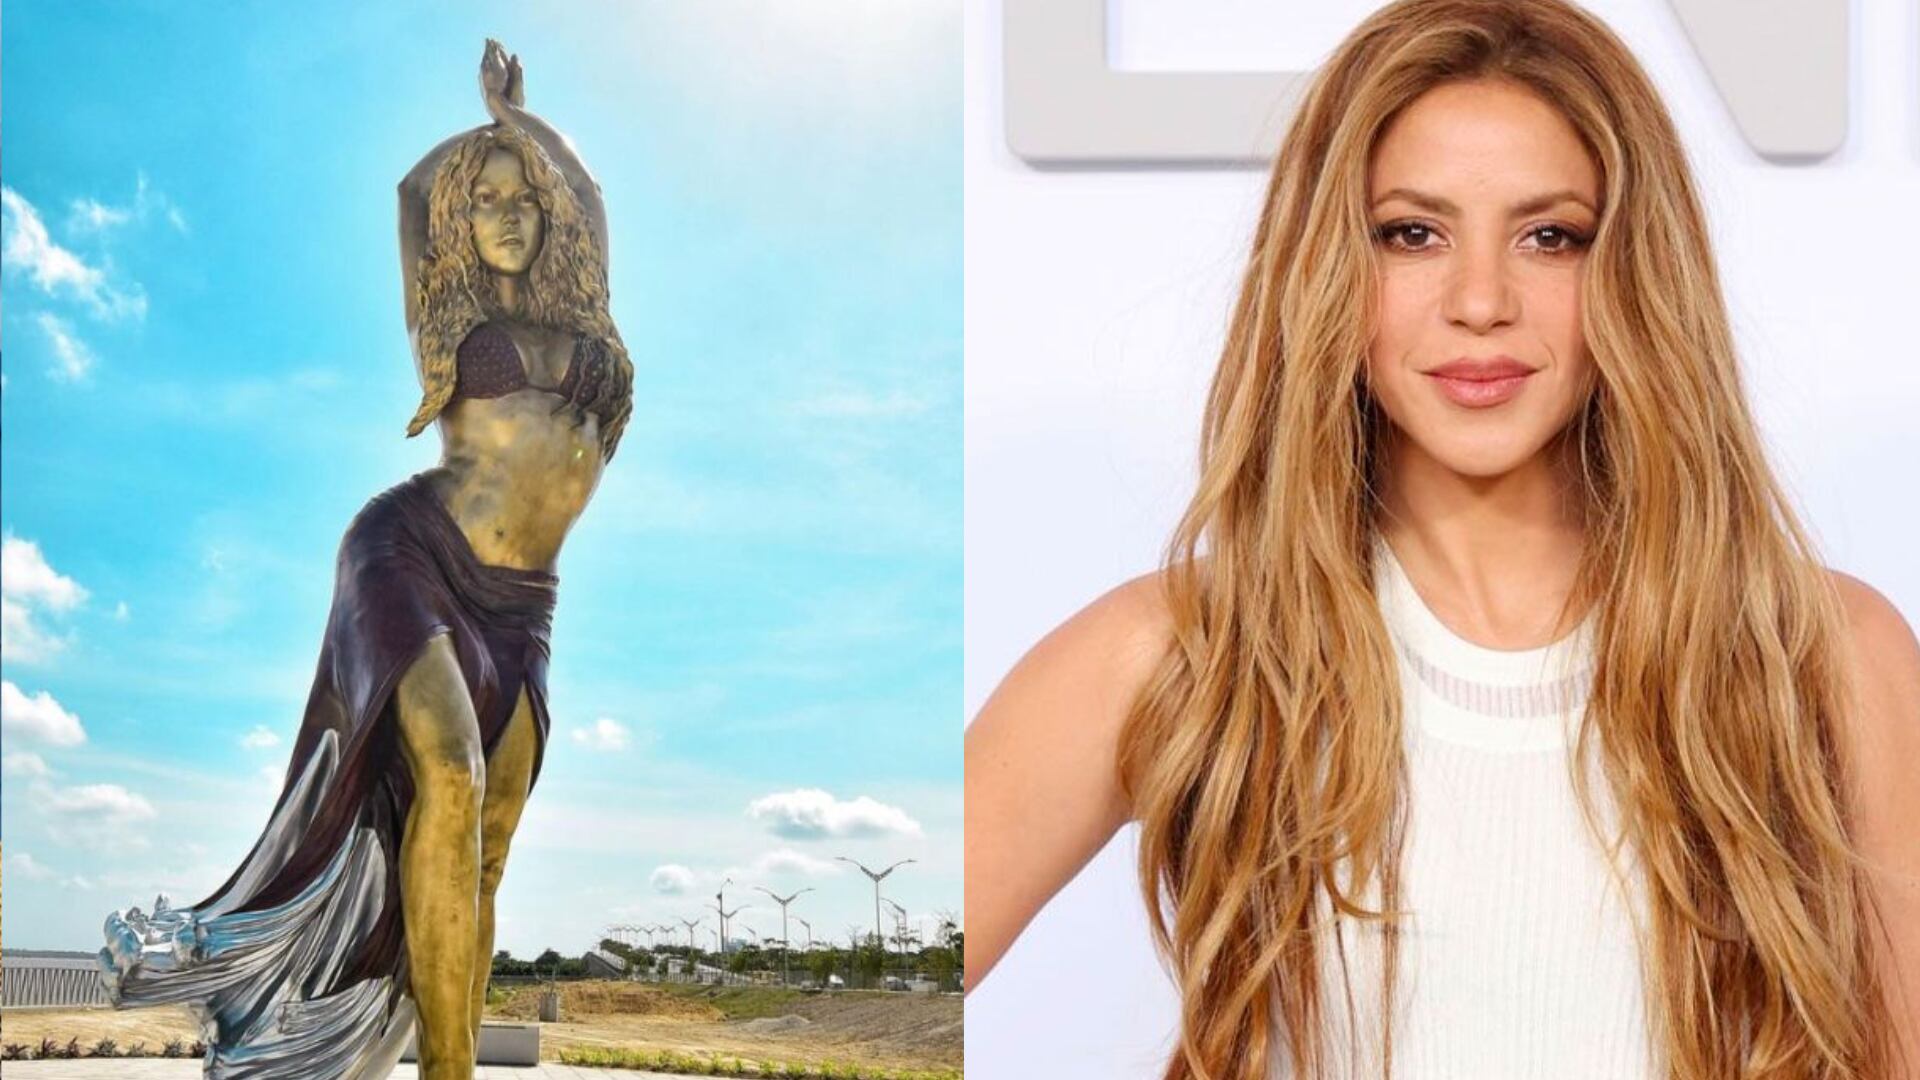 Shakira dedicó unas palabras al conocer su estatua en barranquilla